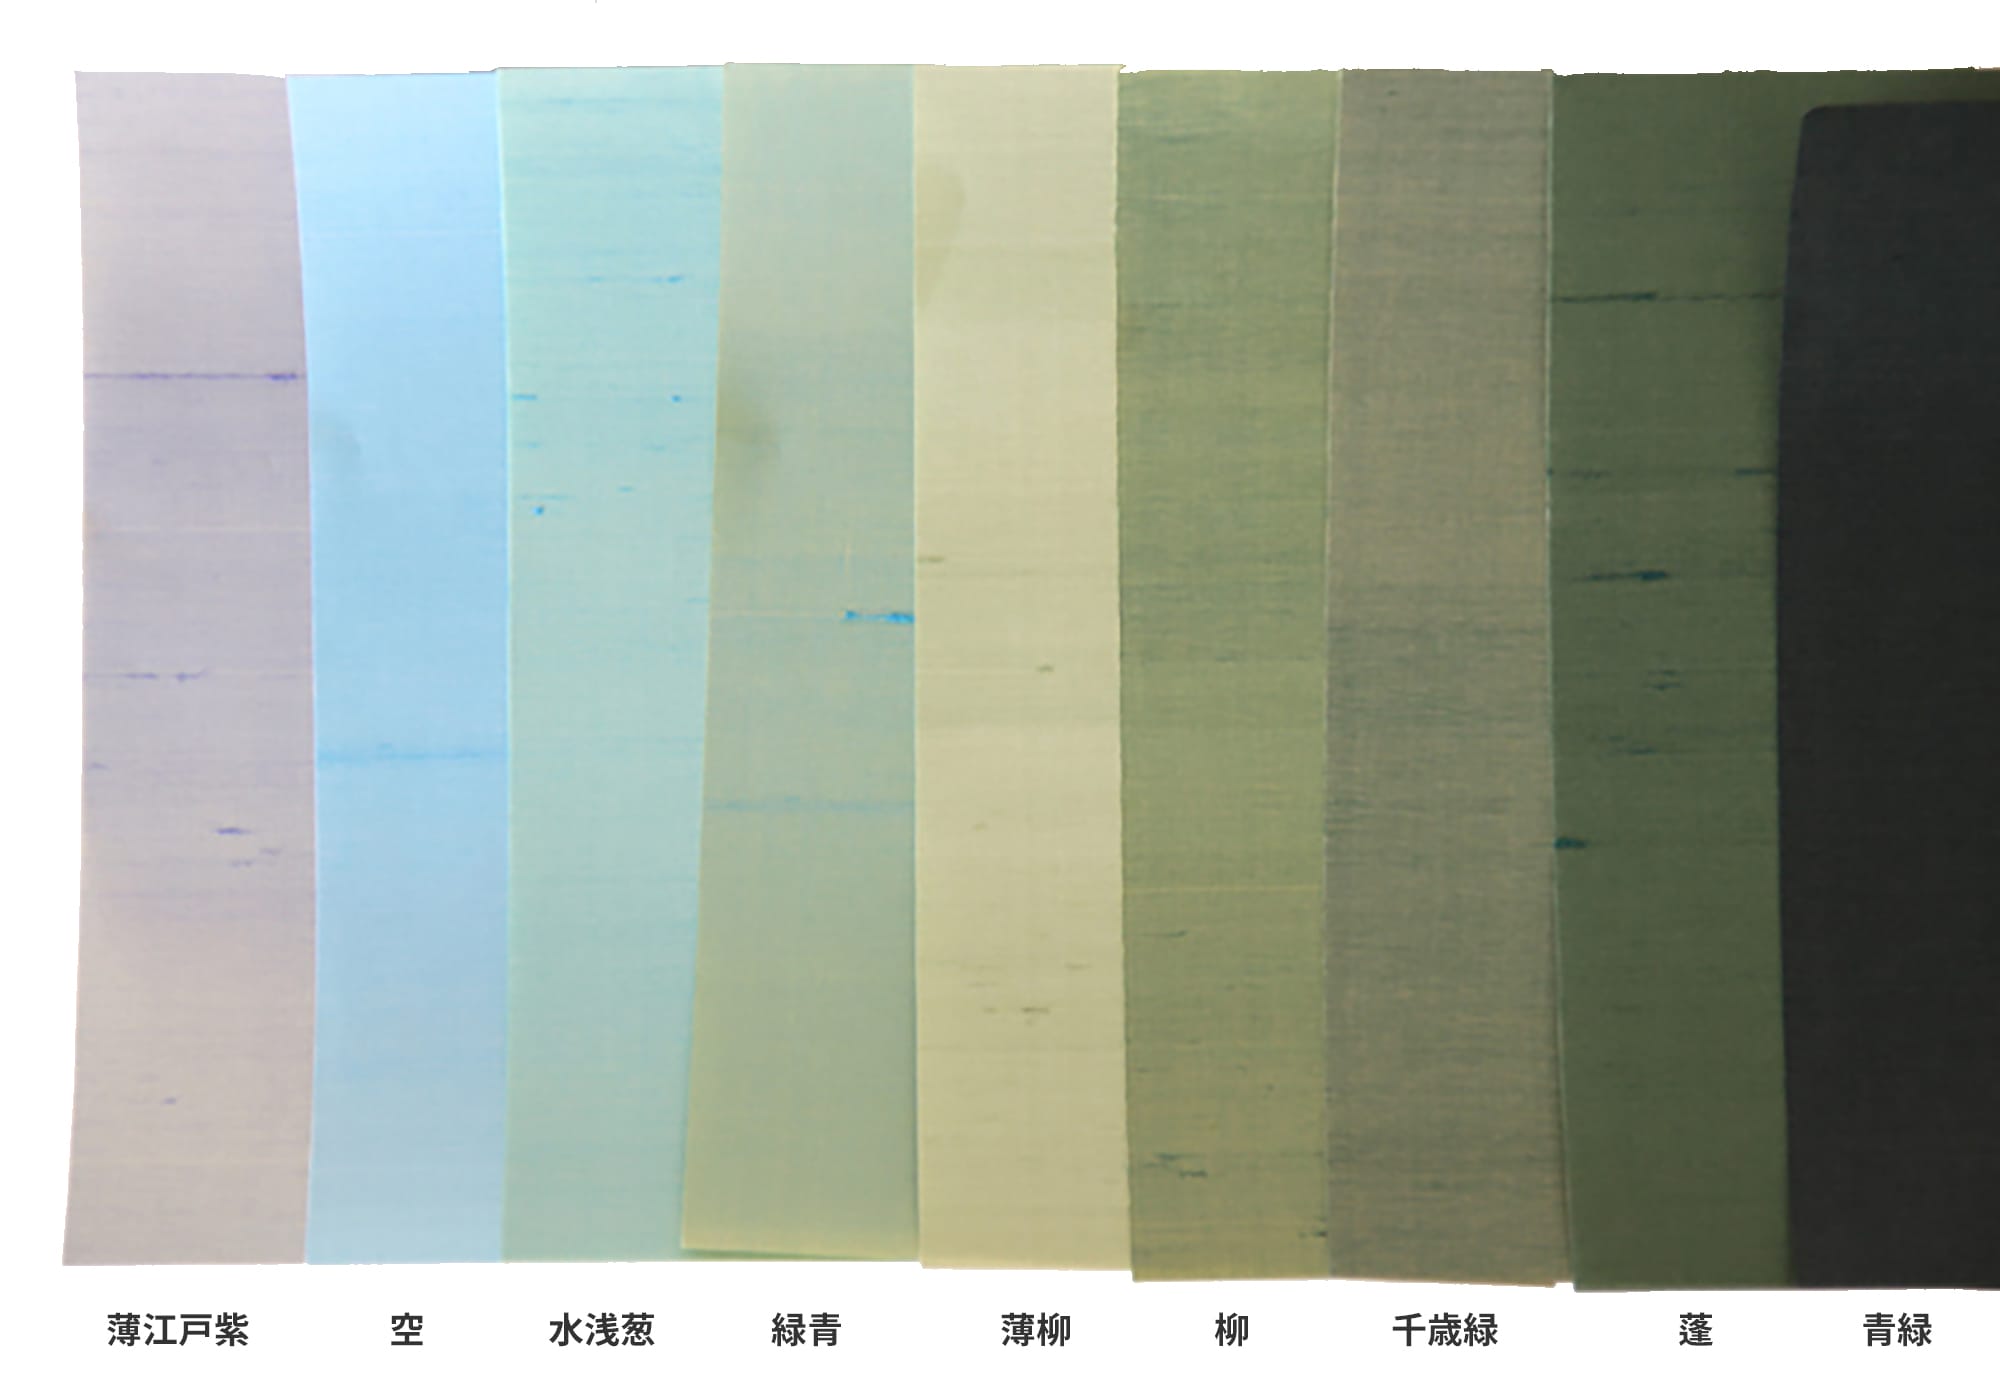 絹布の壁紙 襲(かさね)/カット WL-WP003-02-G007 襲（かさね）の寒色系 全9色